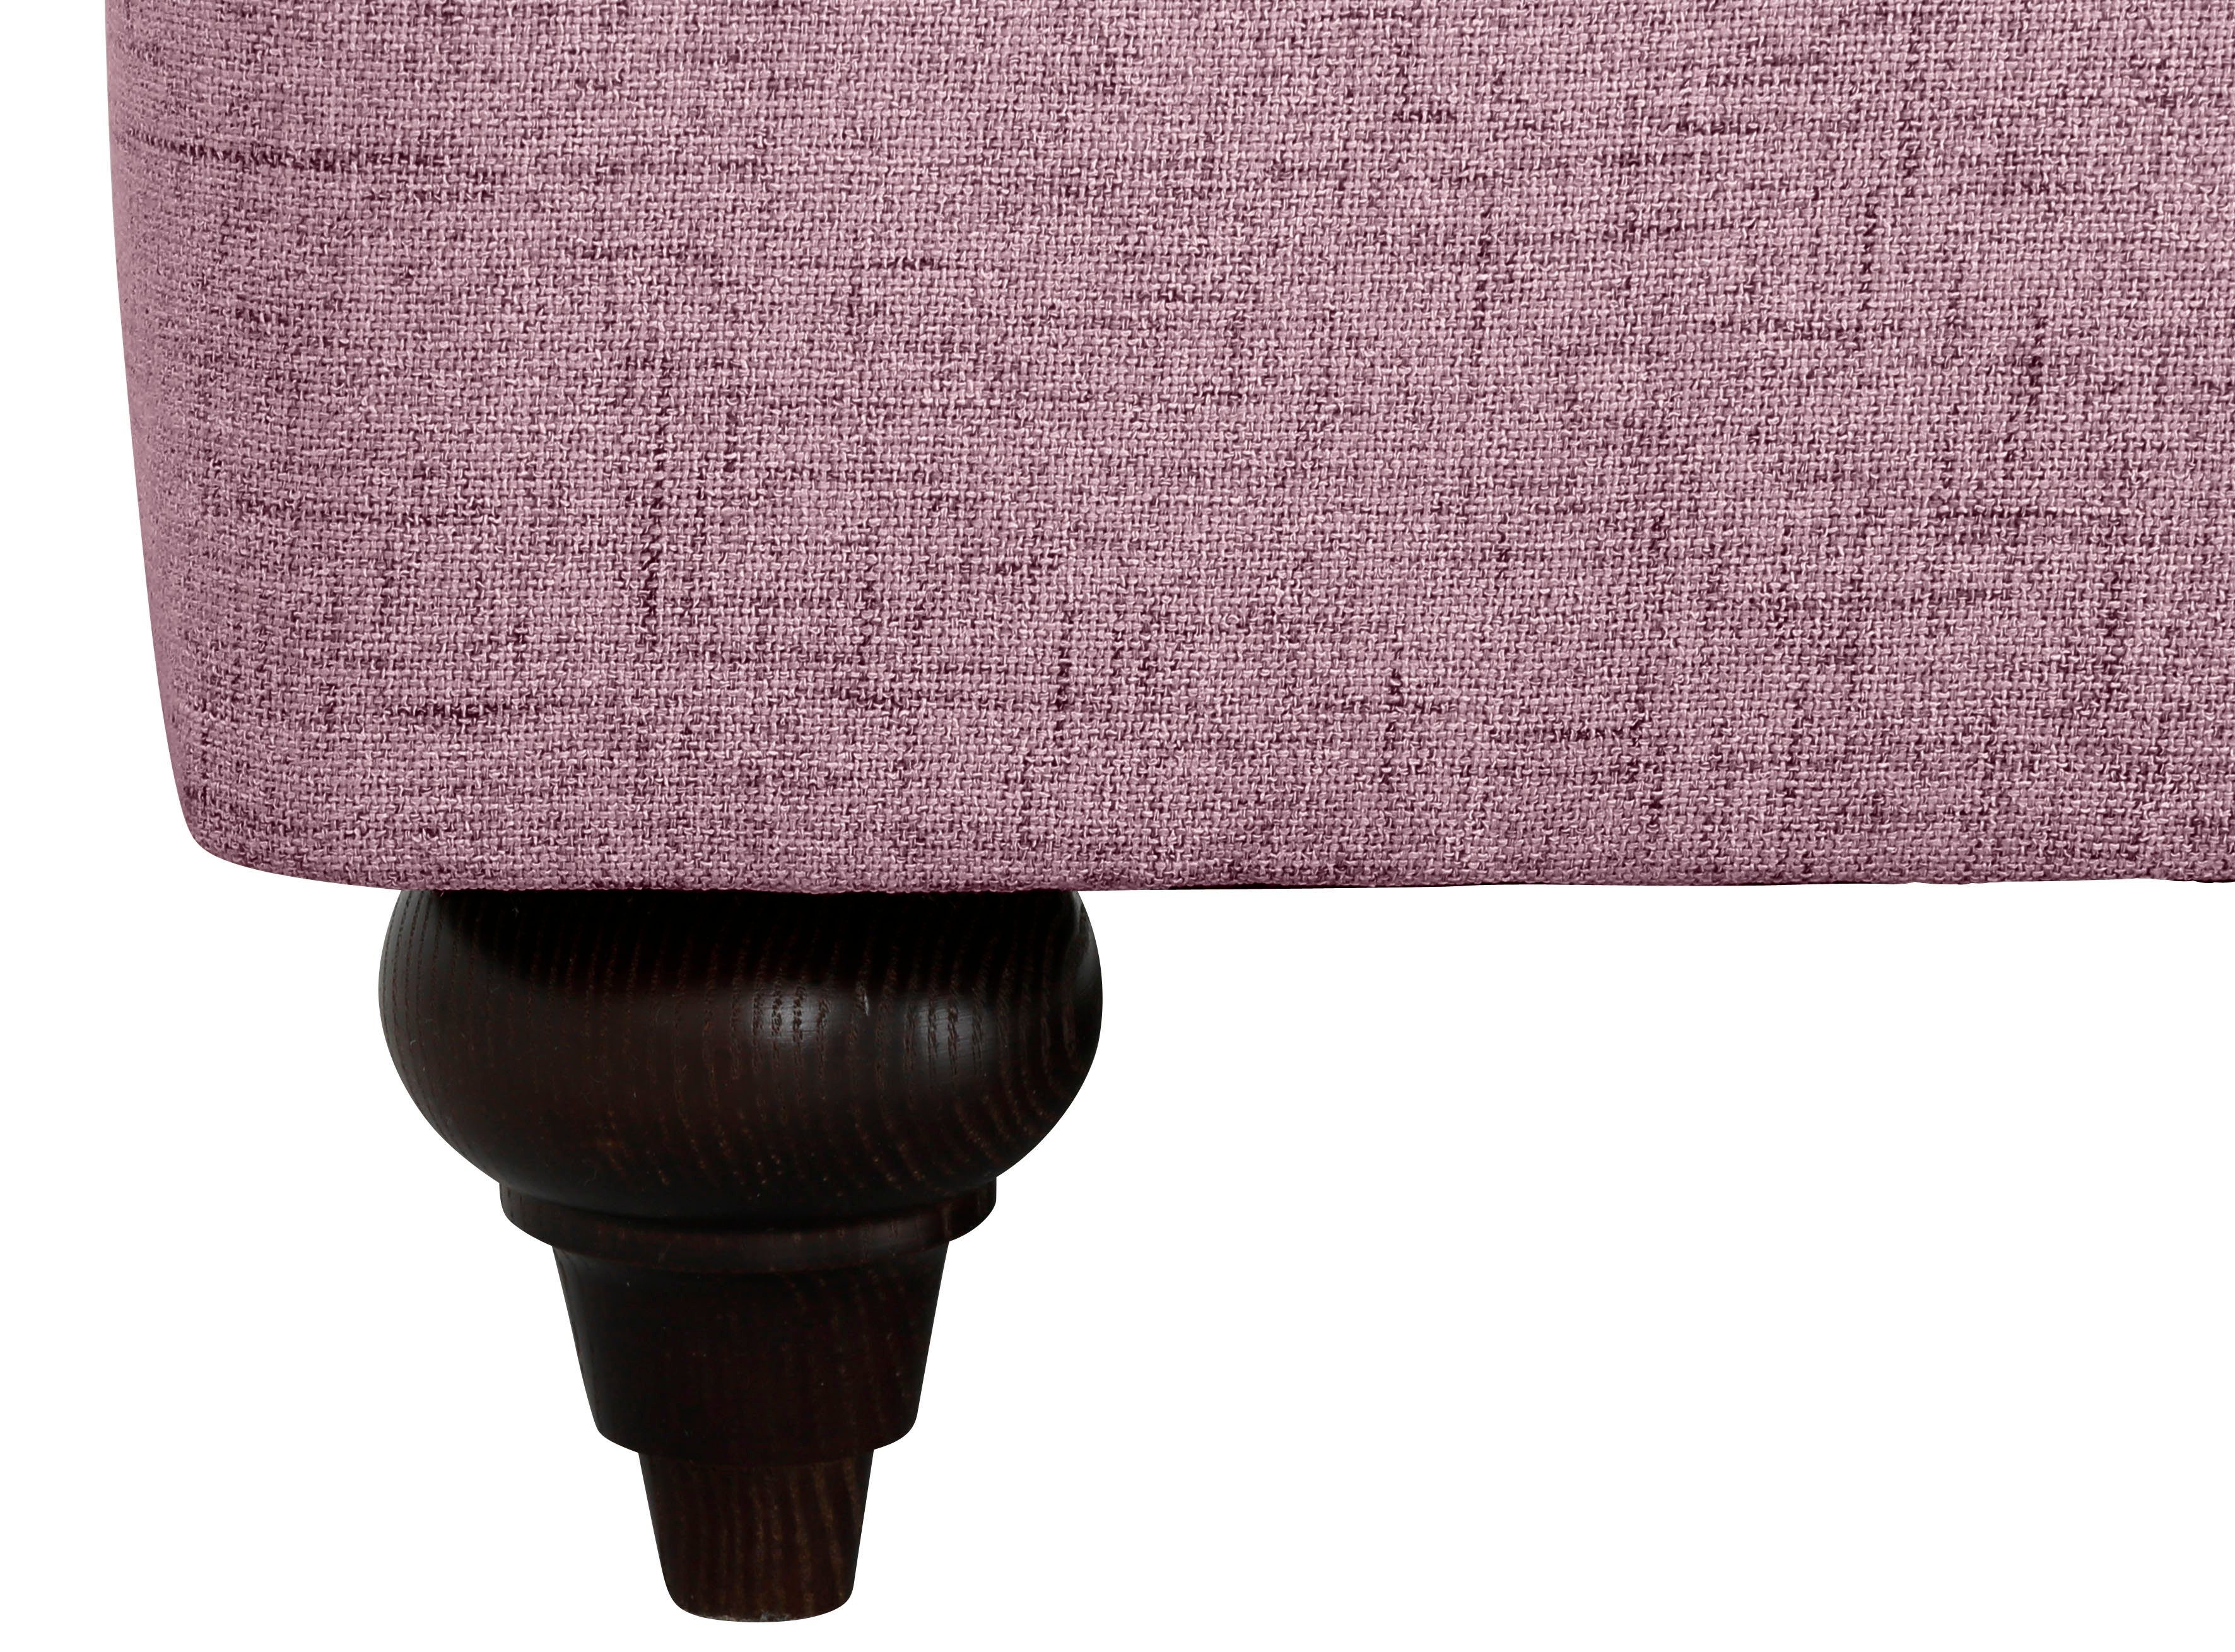 Home violet 2-Sitzer verschiedenen affaire Kaltschaum, in mit Bloomer, Farben erhältlich hochwertigem